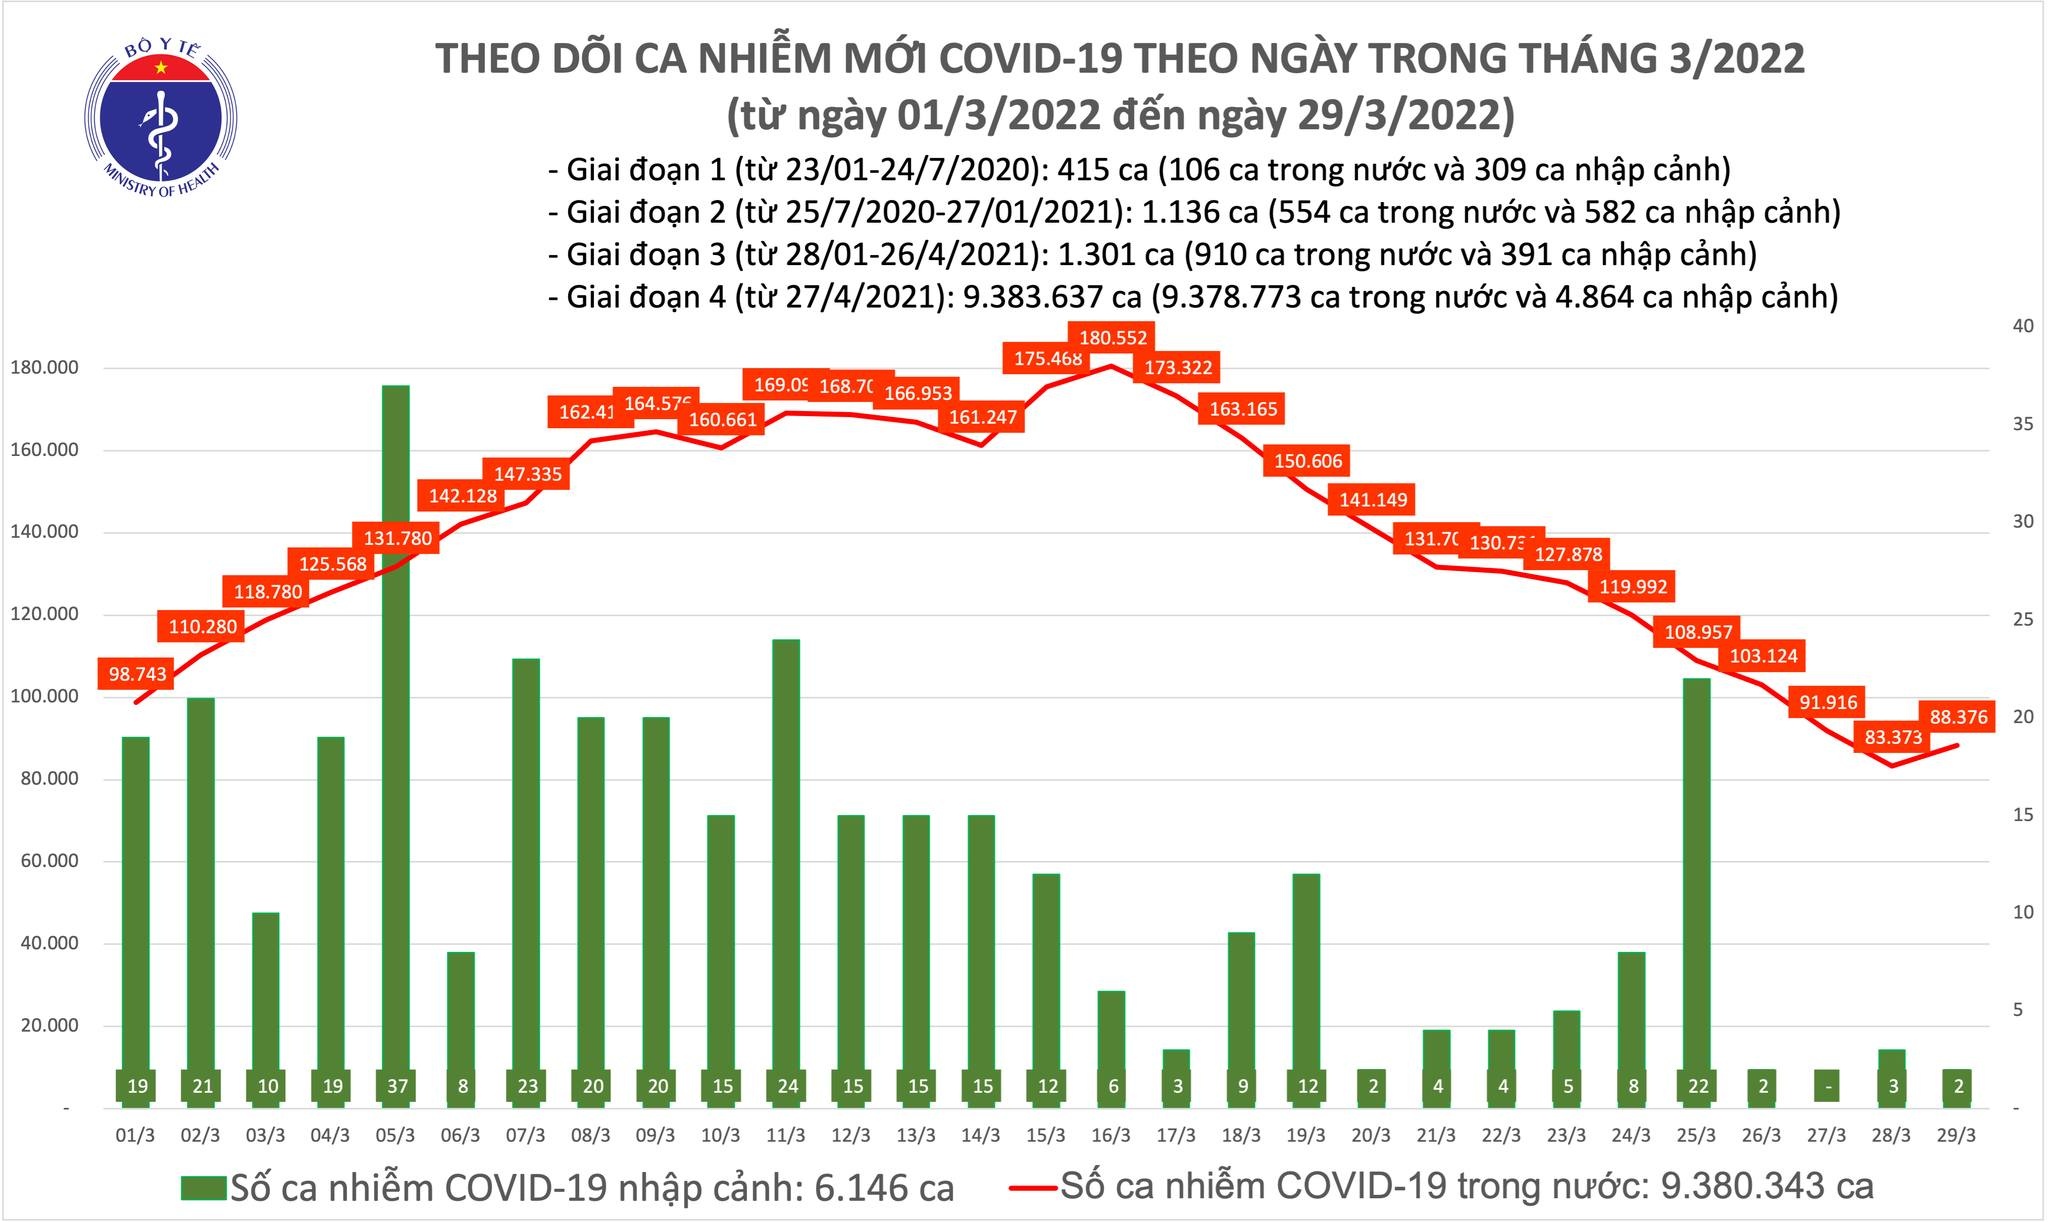 Việt Nam ghi nhận 88.376 ca mắc mới COVID-19 trong ngày 29/3